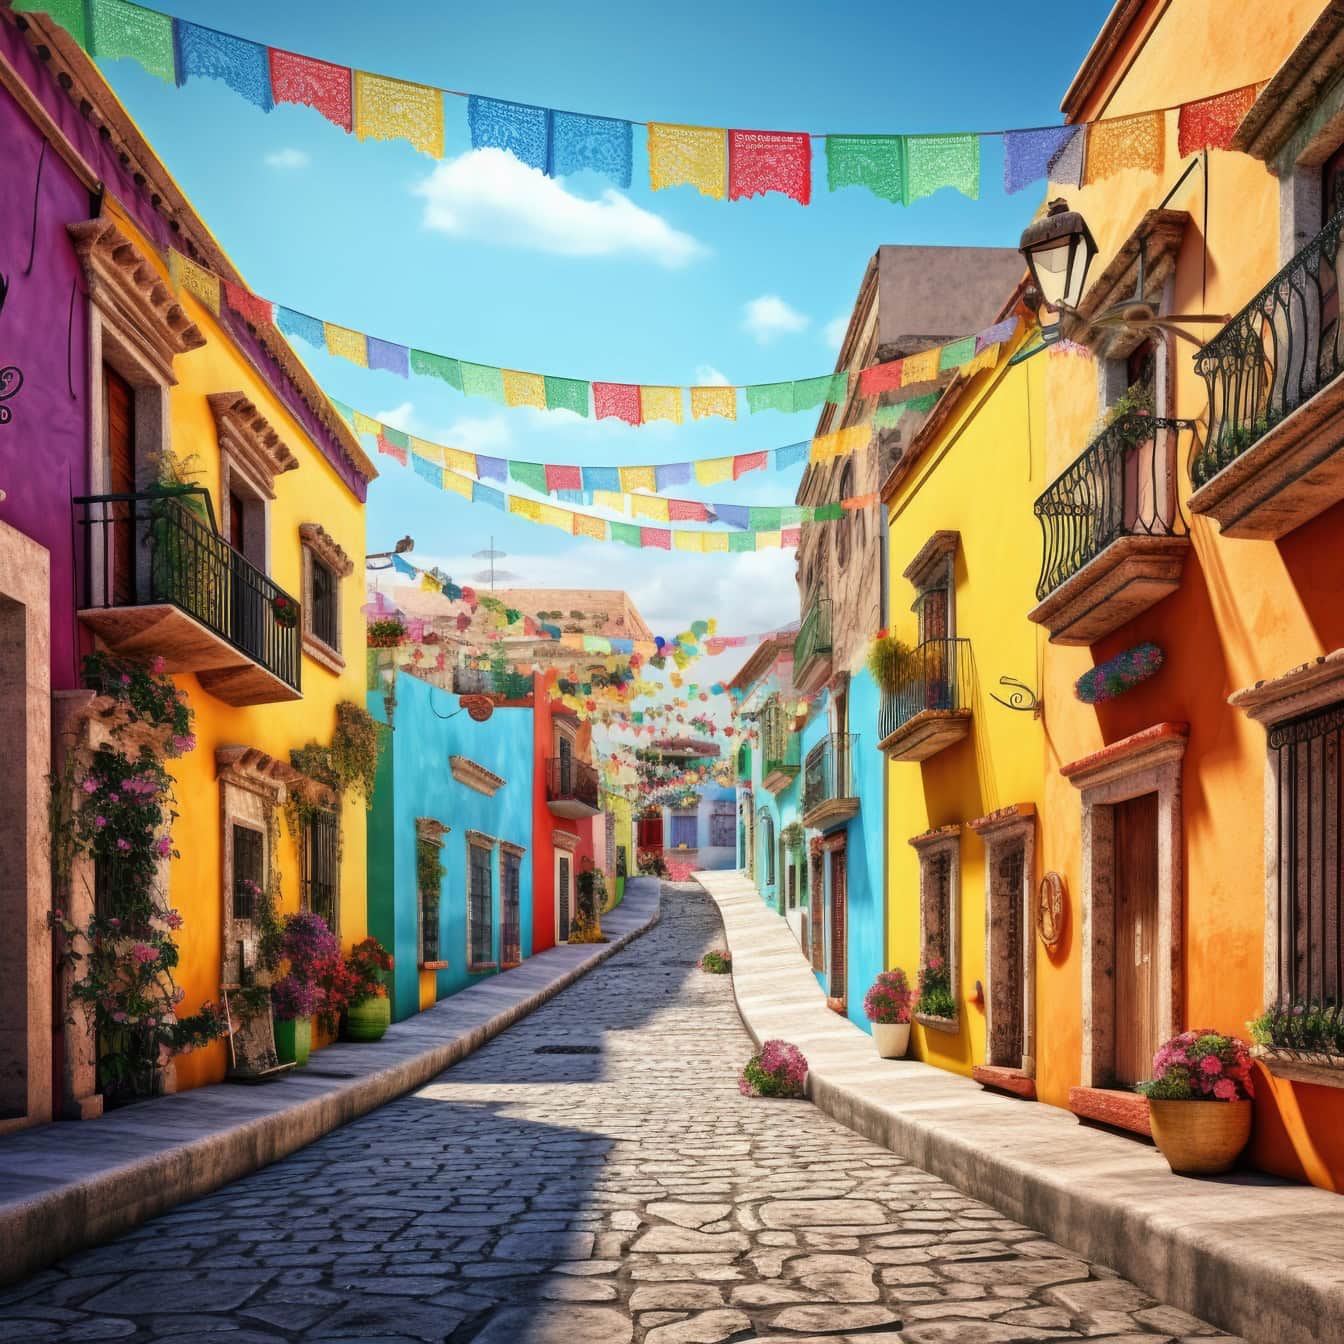 Jalan kota Meksiko dengan bangunan dan bendera berwarna-warni